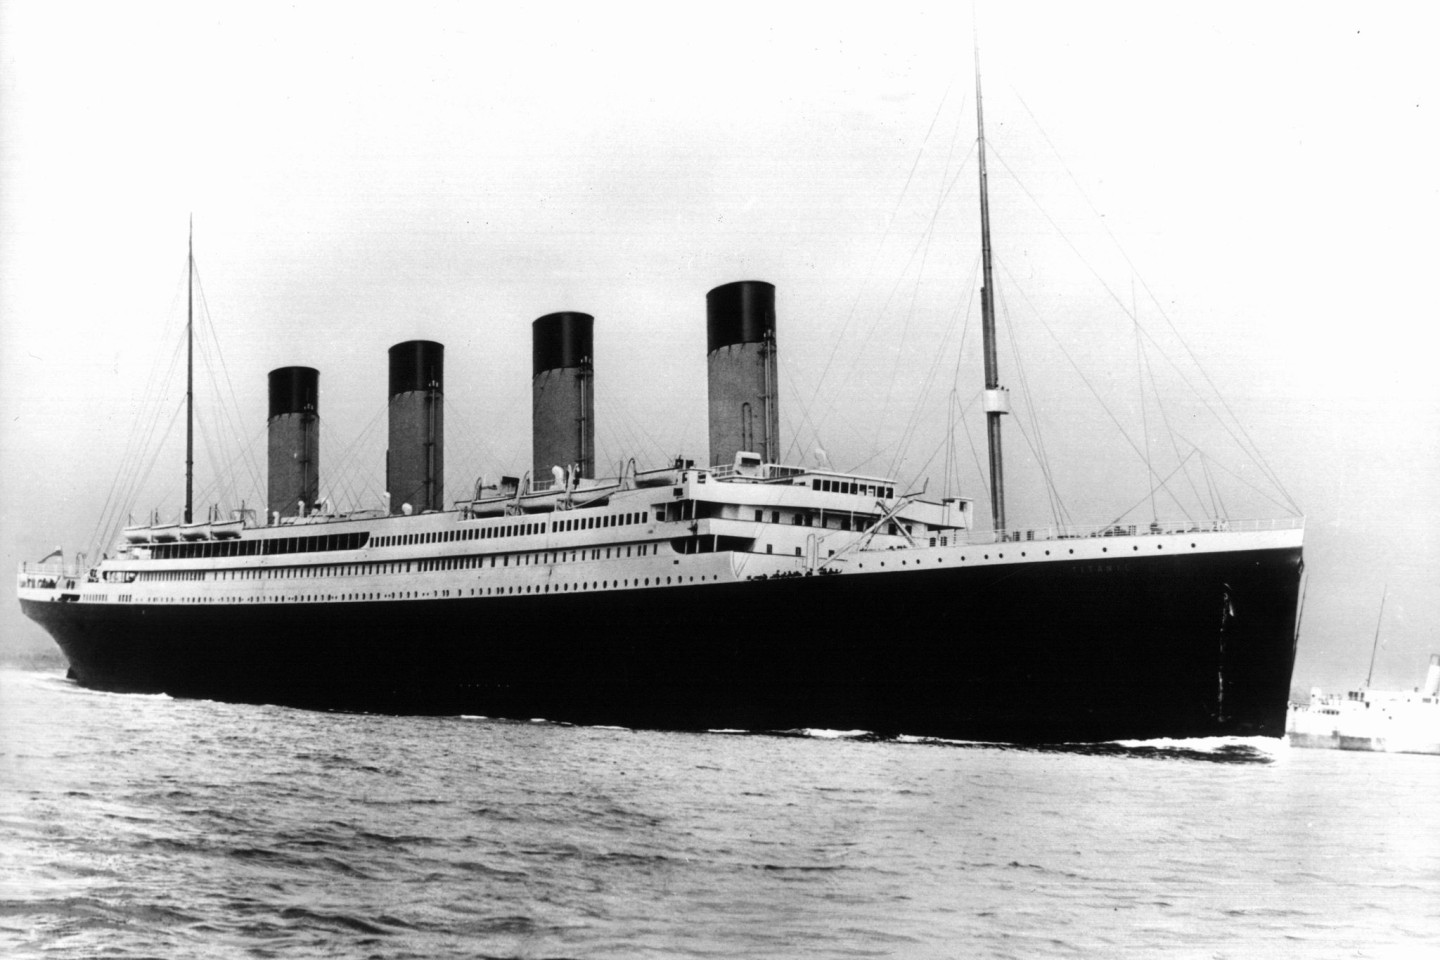 Am 14. April 1912, nur vier Tage nach dem die «Titanic» in See gestochen war, kollidierte das Schiff mit einem Eisberg und sank.